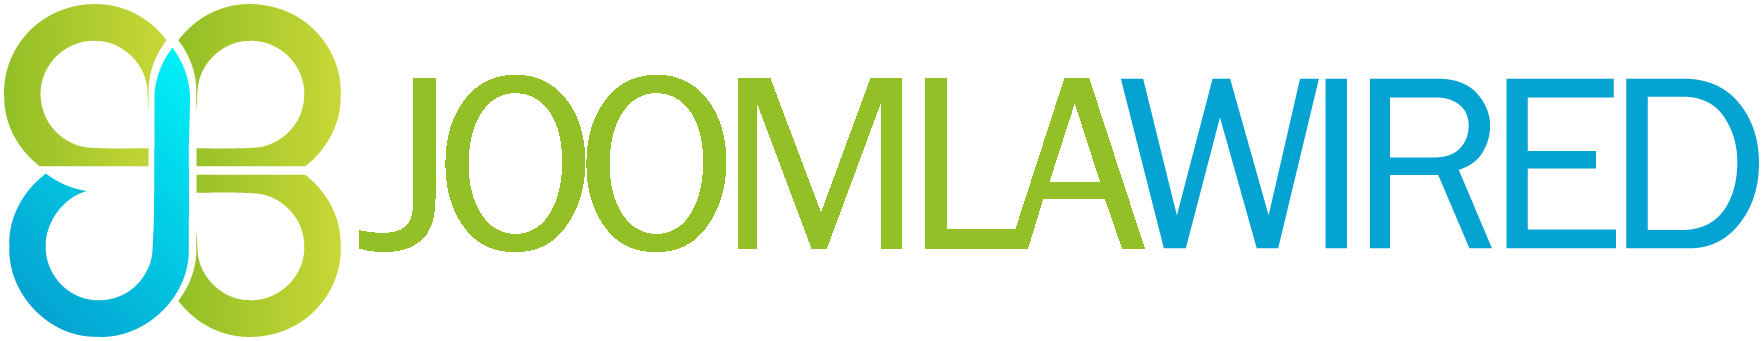 Joomla Wired Ltd